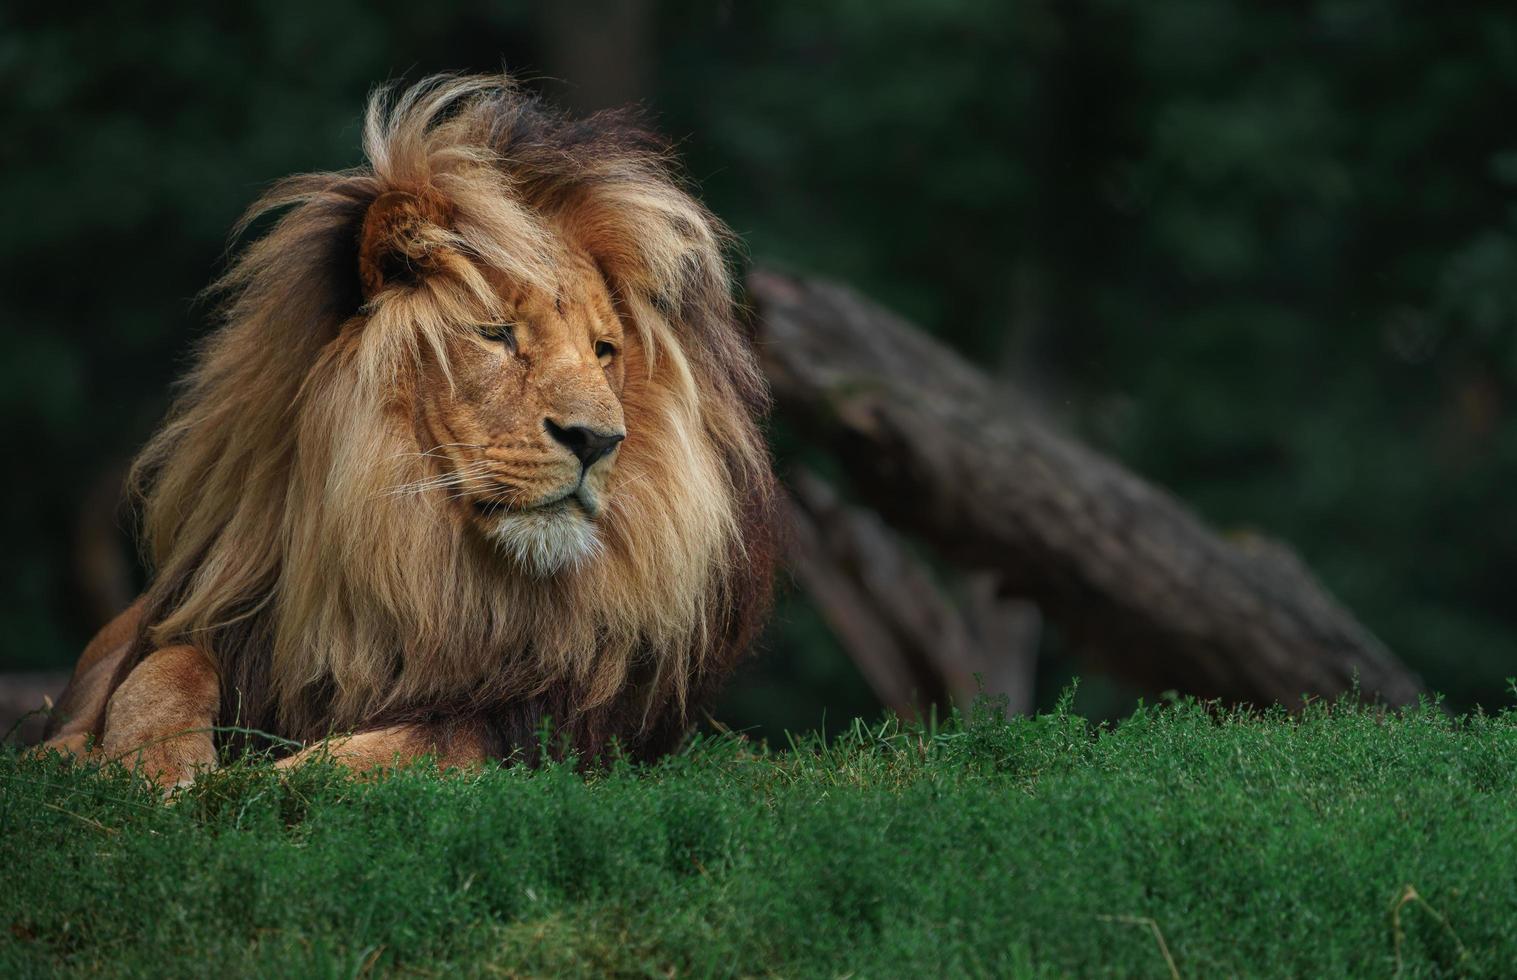 katanga leeuw in gras foto